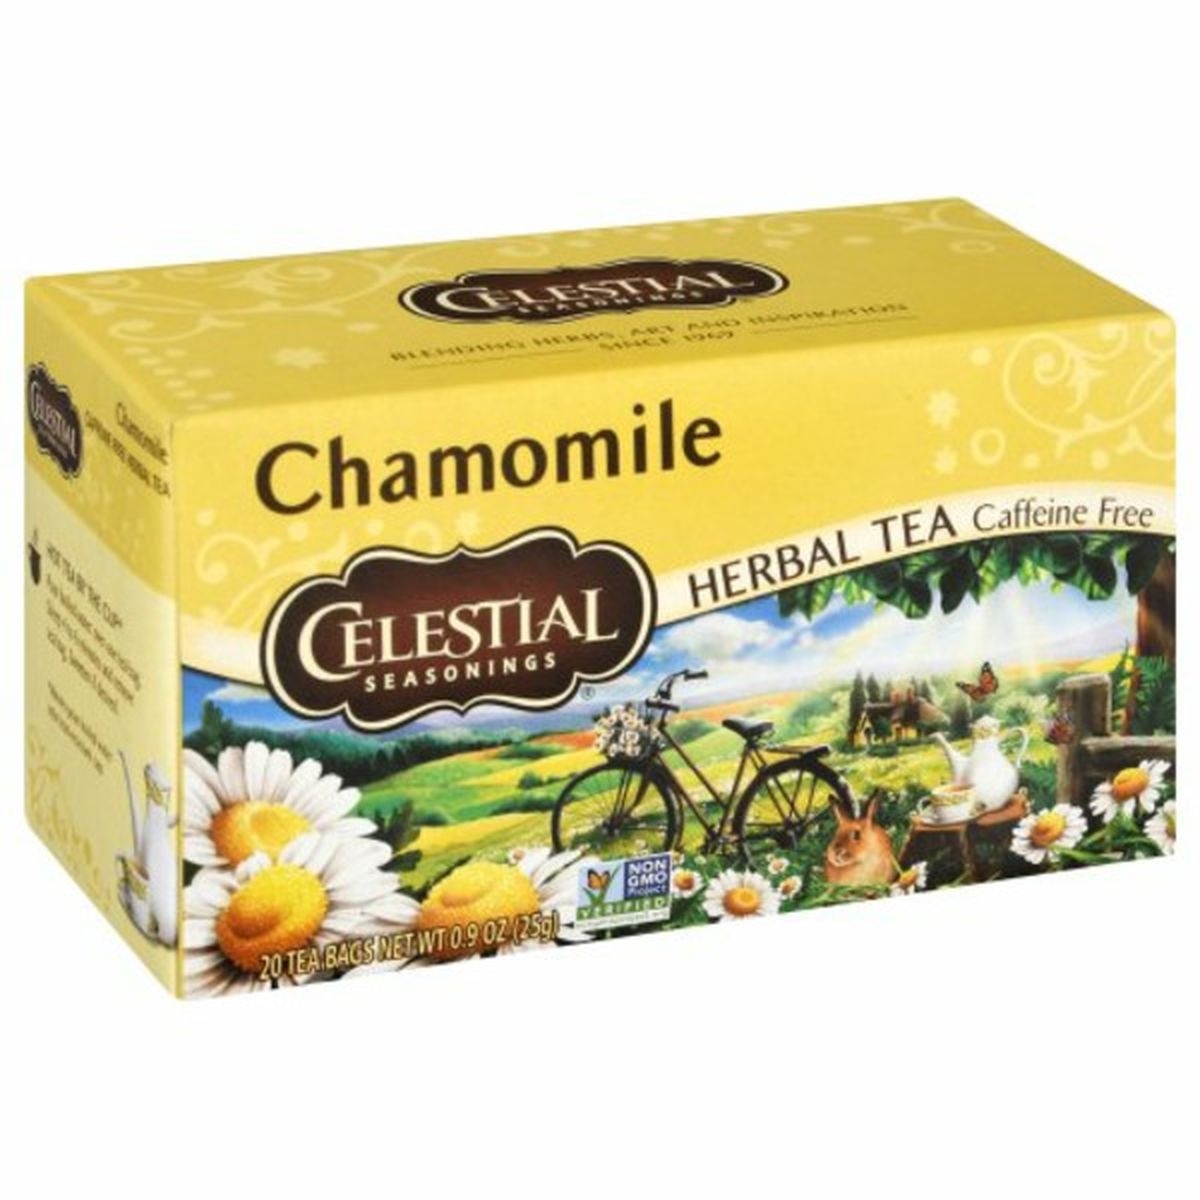 Calories in Celestial Seasonings Herbal Tea, Caffeine Free, Chamomile, Tea Bags